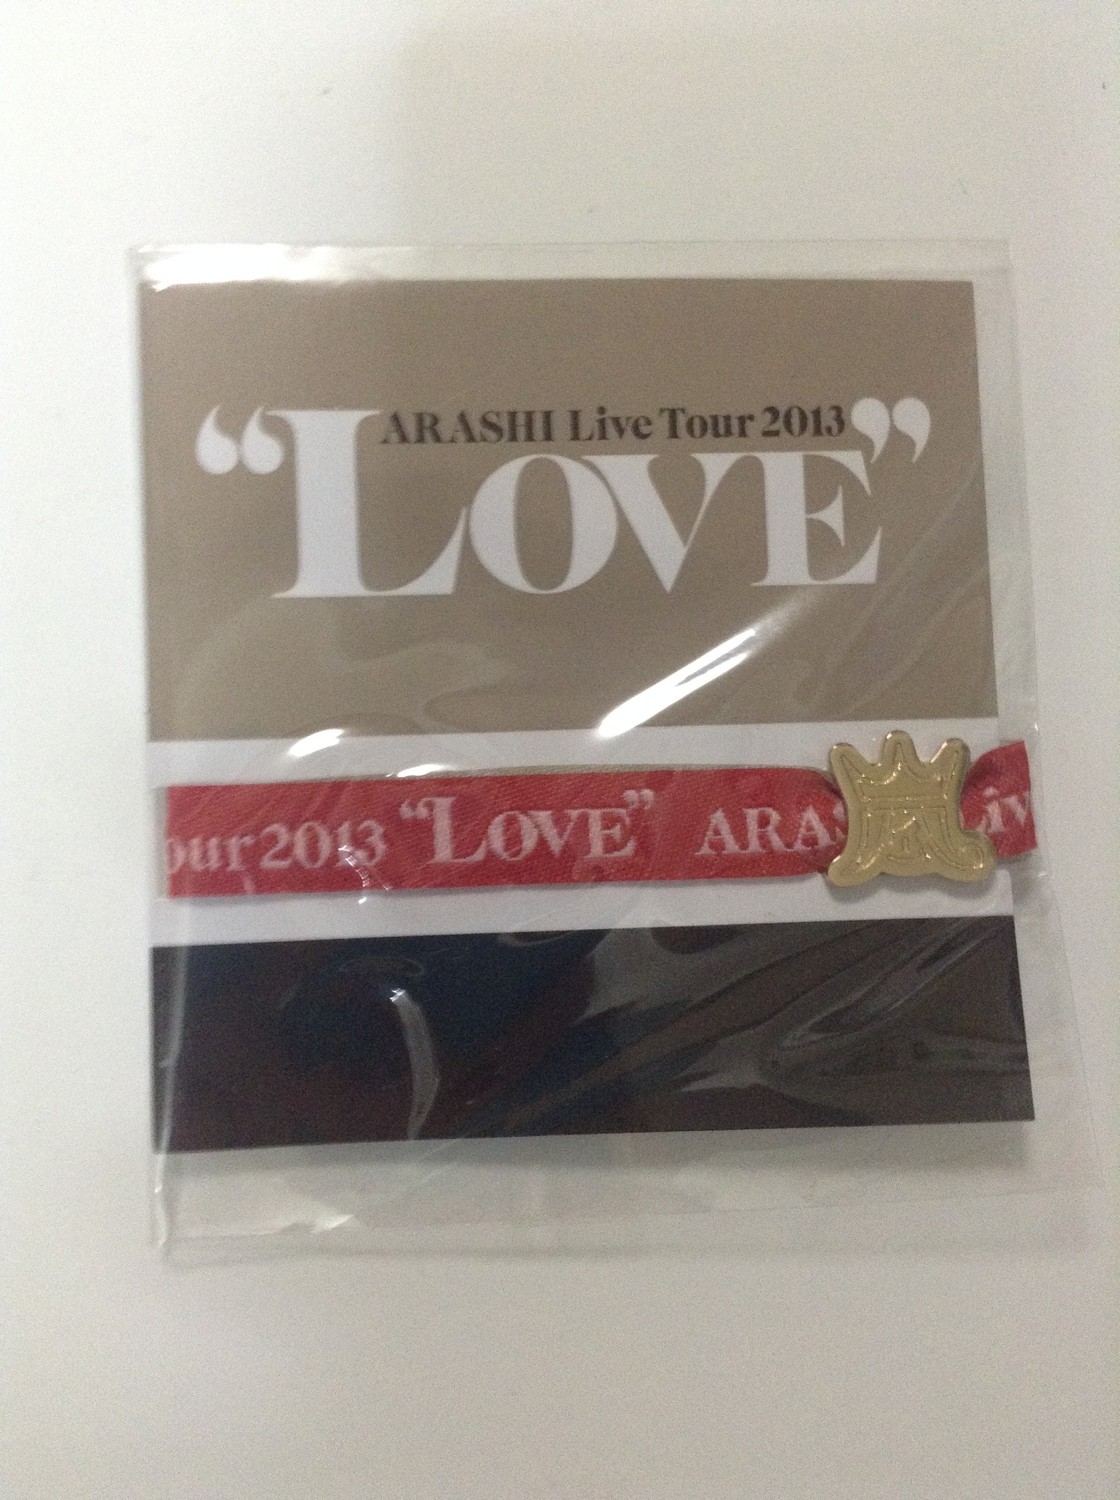 Arashi LOVE Tour Venue Limited Ribbon Bracelet Red